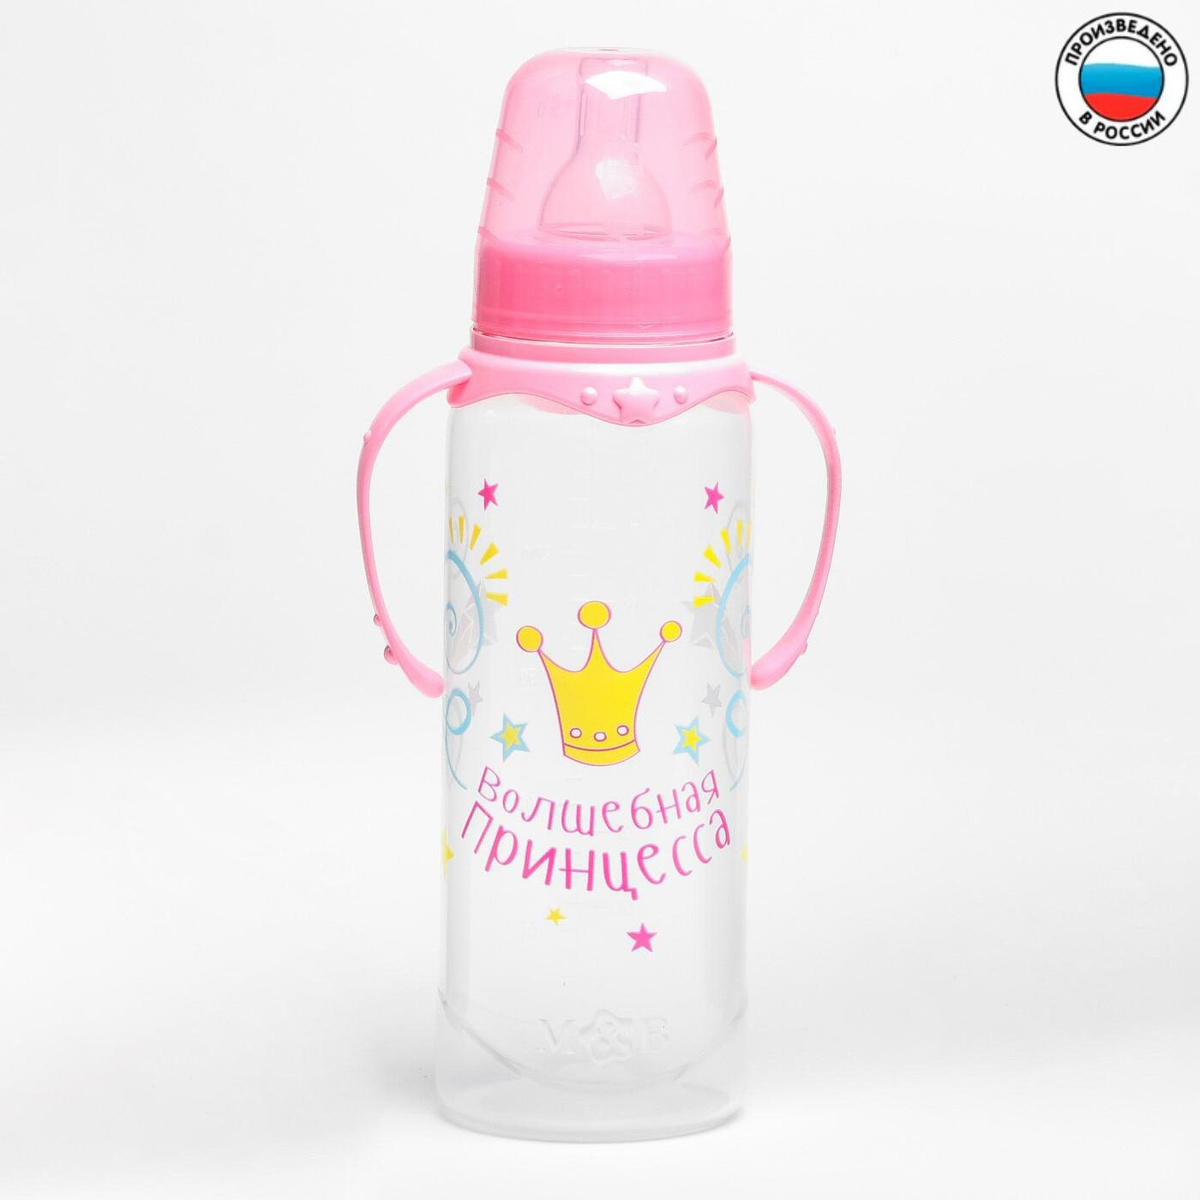 Бутылочка 2969814 Принцесса 250мл с ручками цвет: розовый - Бугульма 